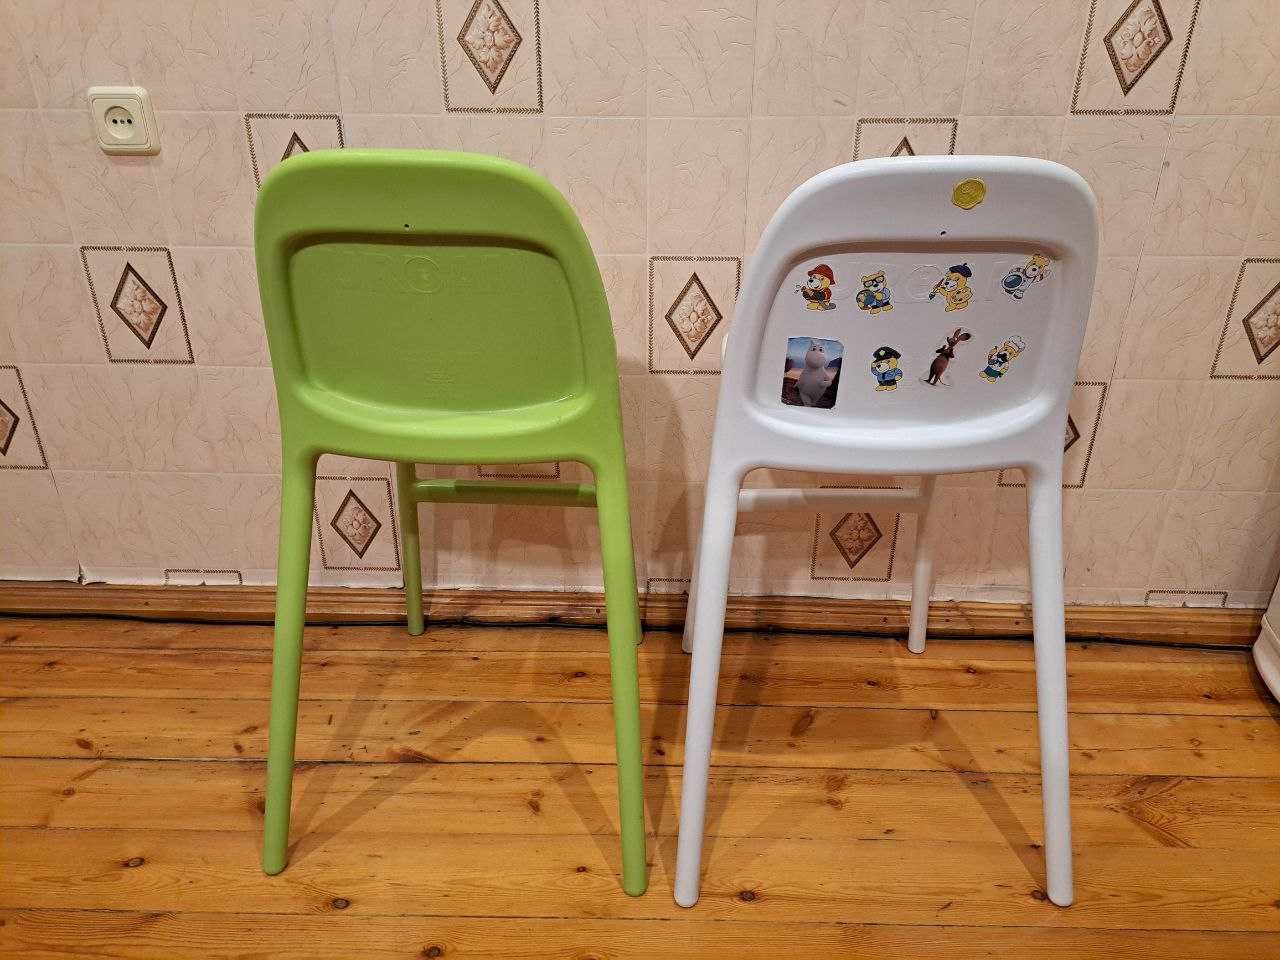 Детский высокий стульчик IKEA URBAN, б/у, зеленый и белый